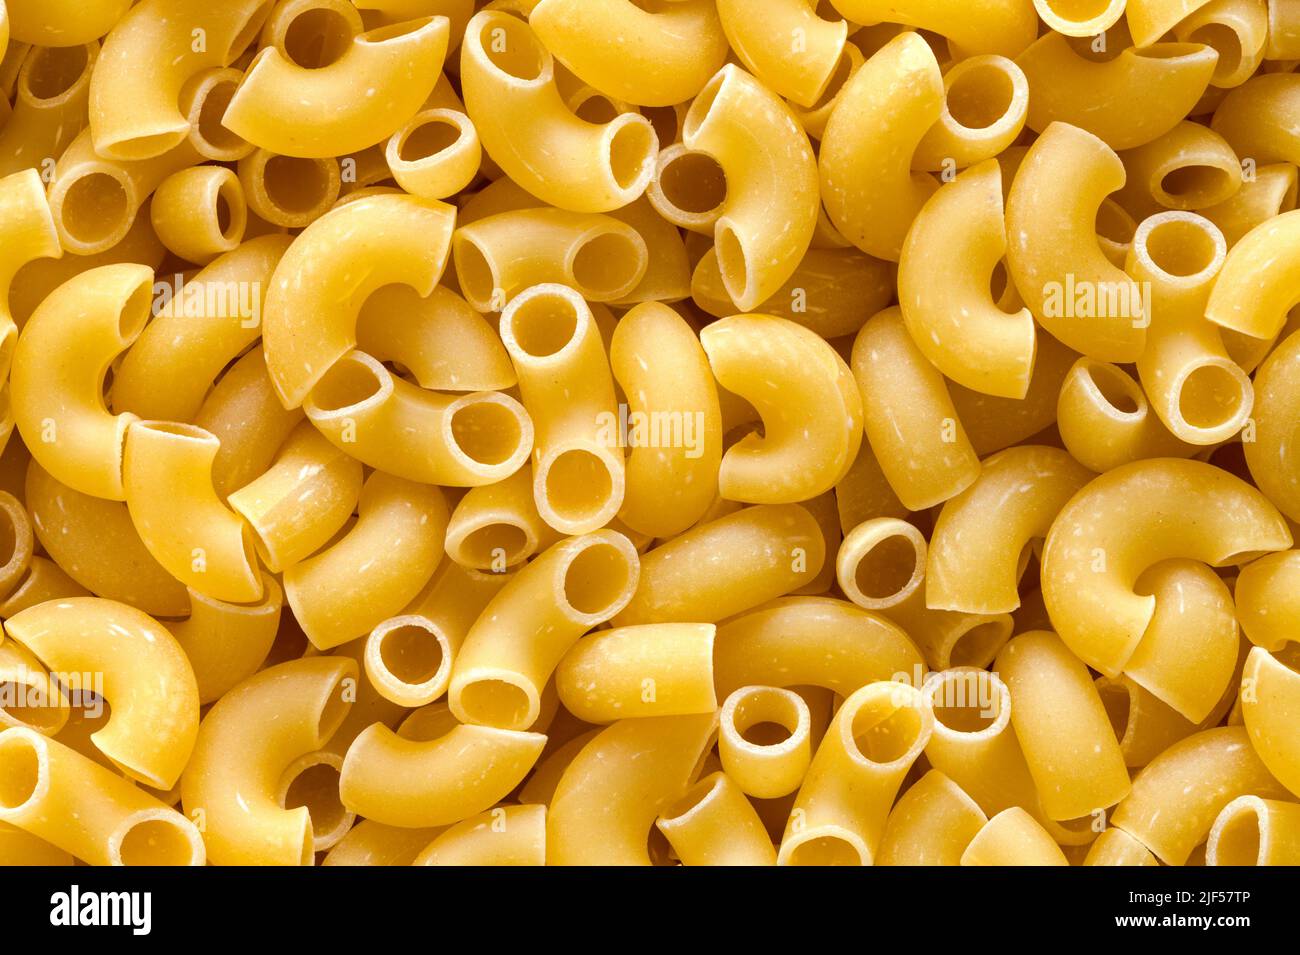 Dry Elbow Pasta Macaroni Noodles Pile Background. Stock Photo